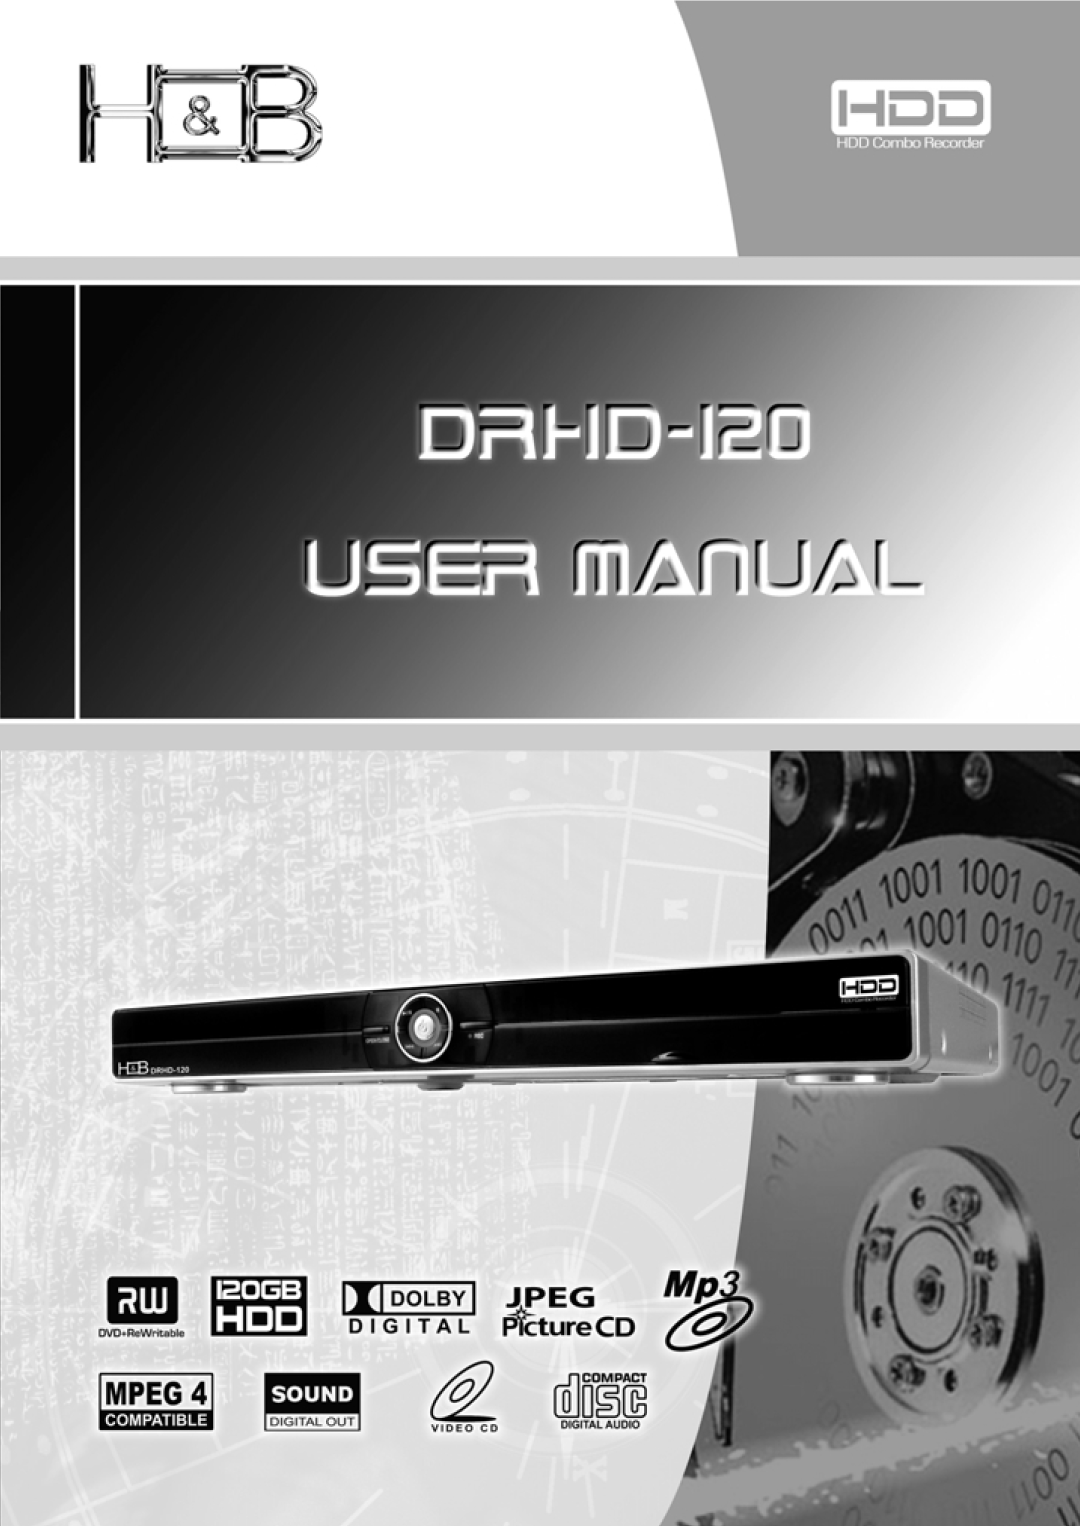 Kodak DRHD-120 manual 